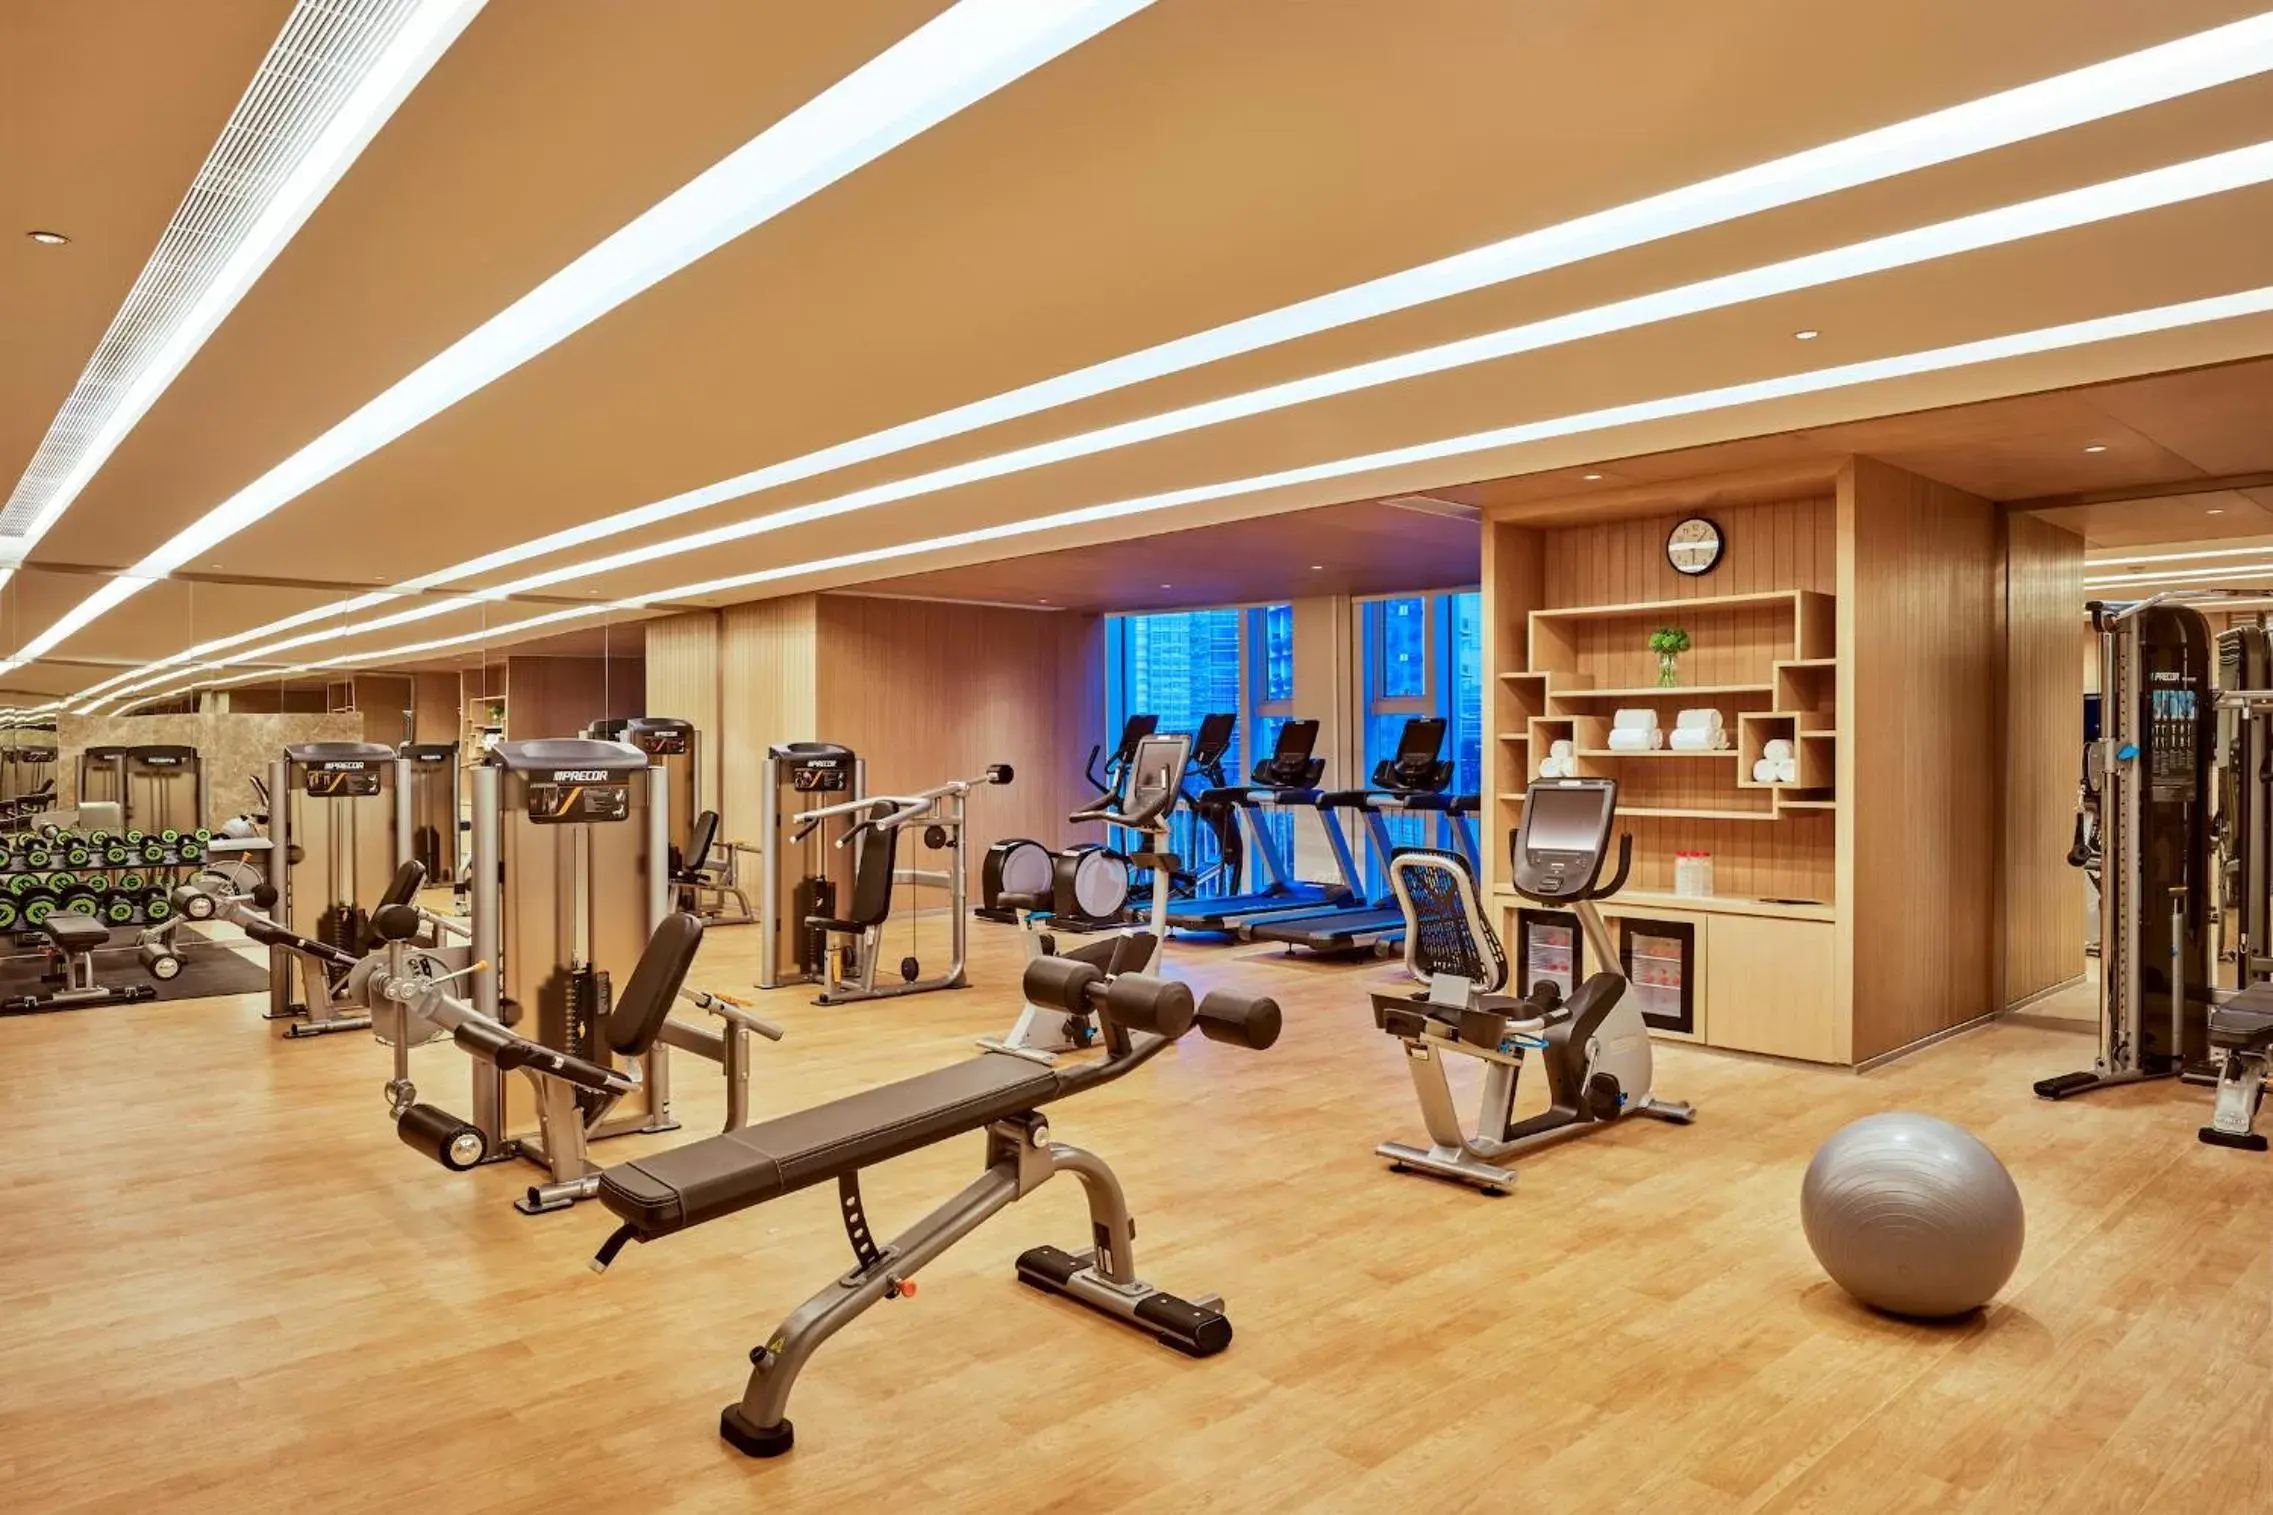 Fitness centre/facilities, Fitness Center/Facilities in Hyatt Regency Shenzhen Yantian